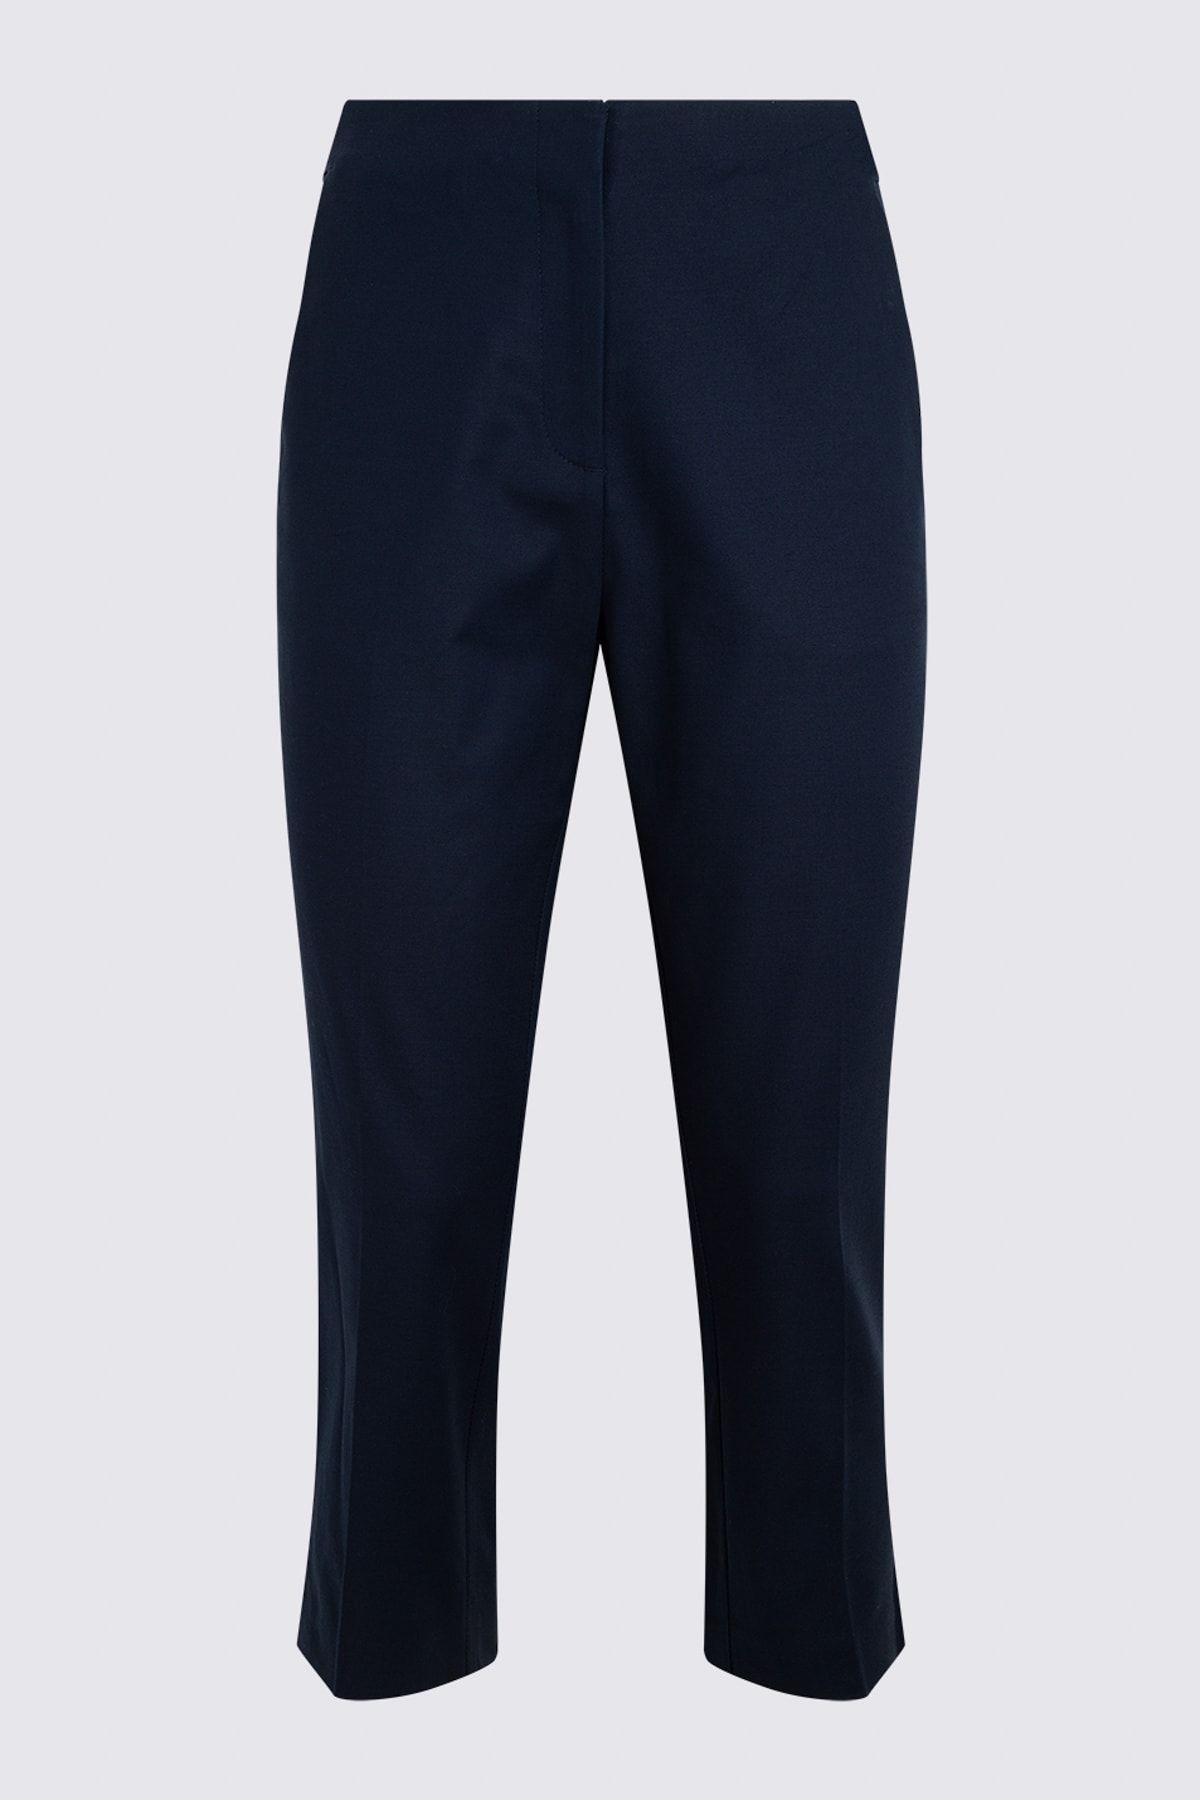 Marks & Spencer Kadın Lacivert Pamuklu Crop Pantolon T59005603X